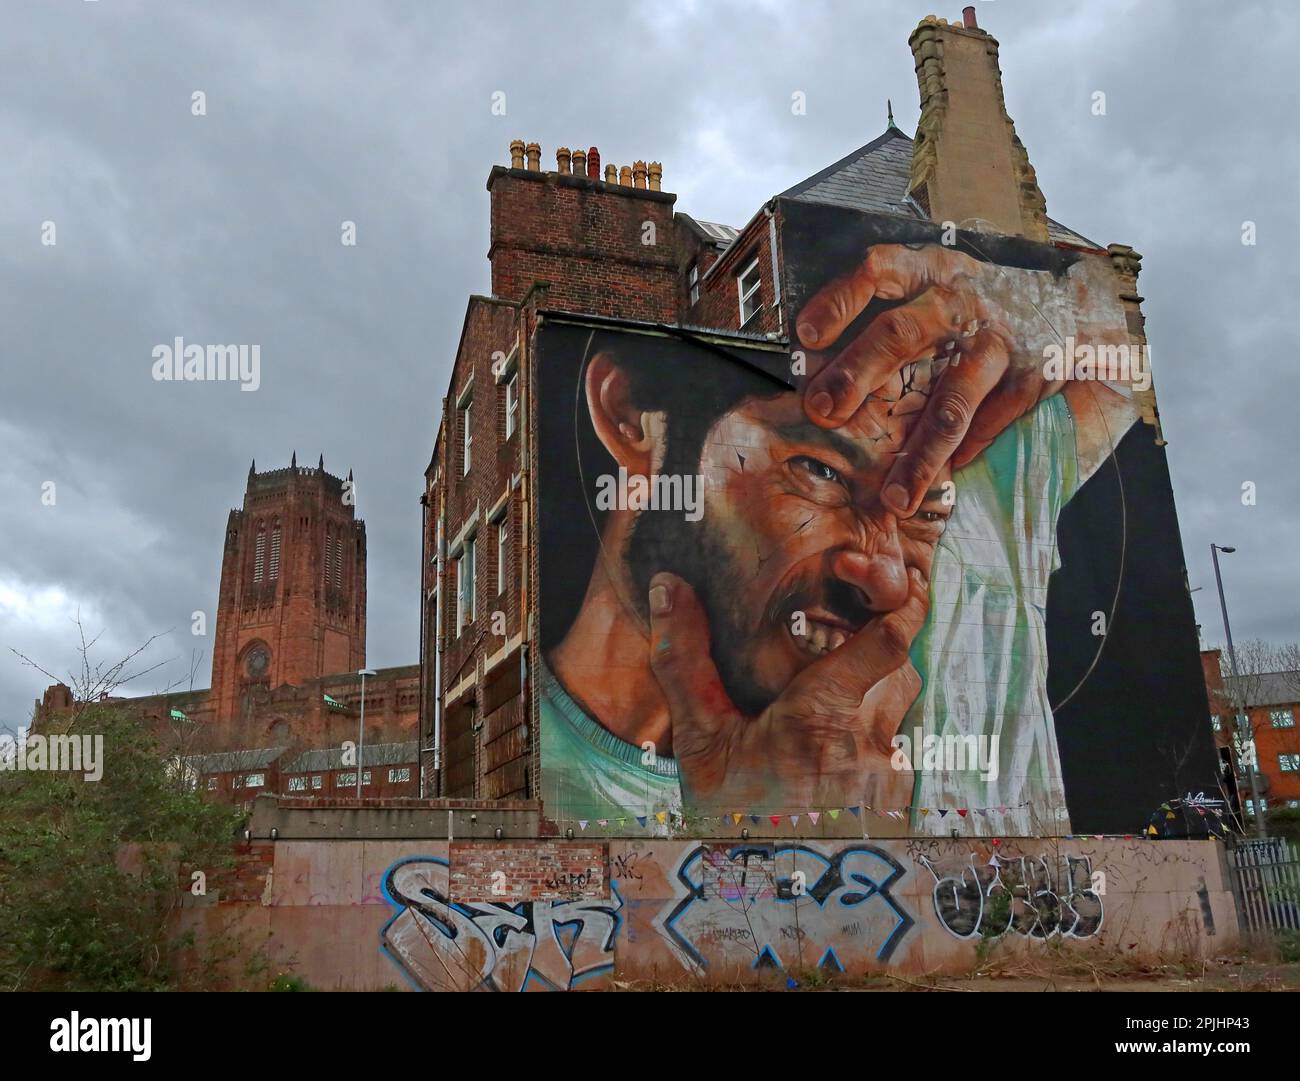 Liam Bononi, brasilianischer Straßenkünstler - Hands, 3-4 Great George Place, Liverpool, Merseyside, England, Großbritannien, L1 7AG, mit anglikanischer Kathedrale dahinter Stockfoto